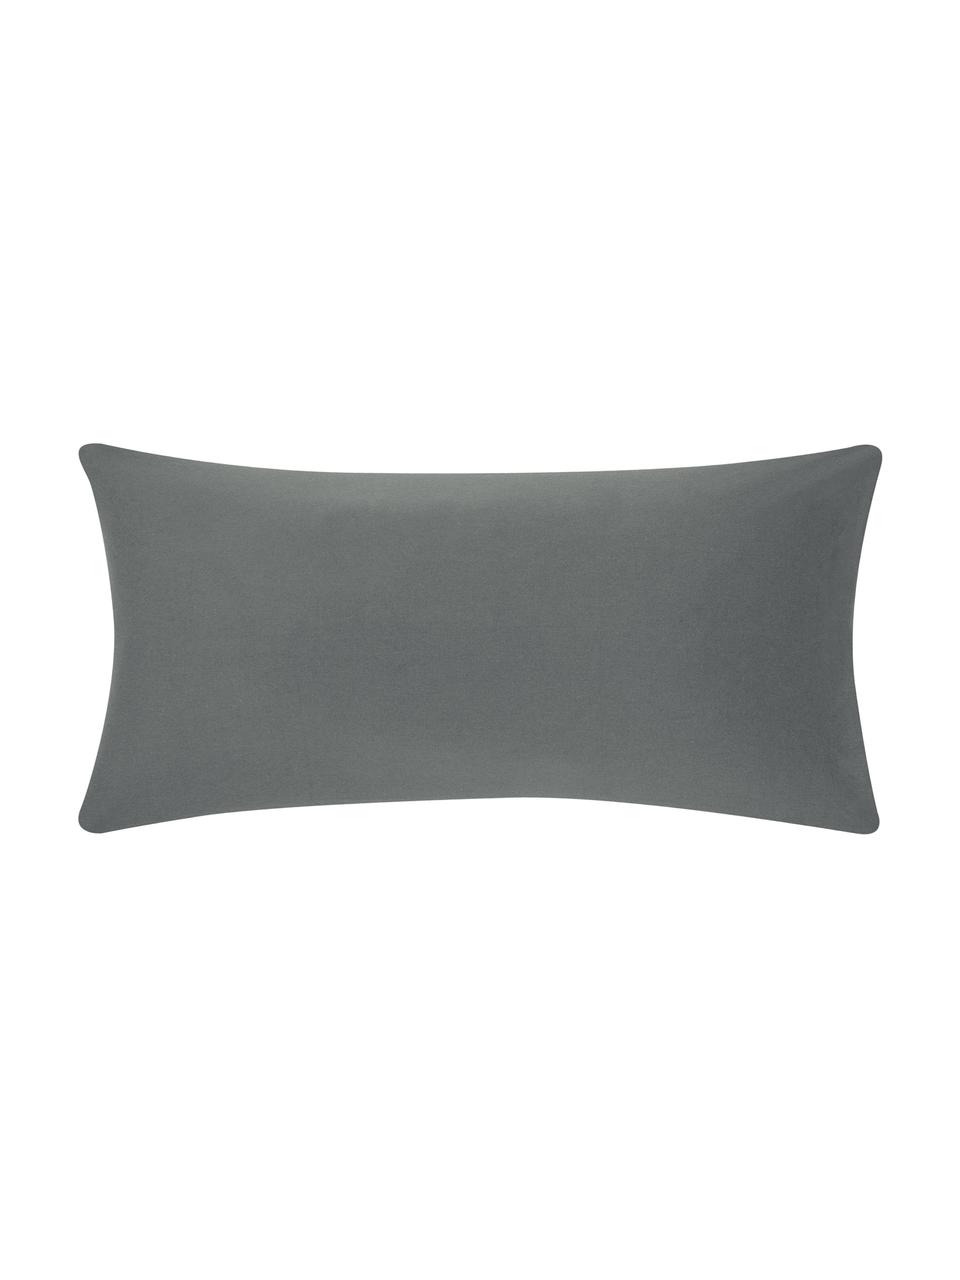 Flanell-Kissenbezüge Biba in Grau, 2 Stück, Webart: Flanell Flanell ist ein k, Grau, B 40 x L 80 cm